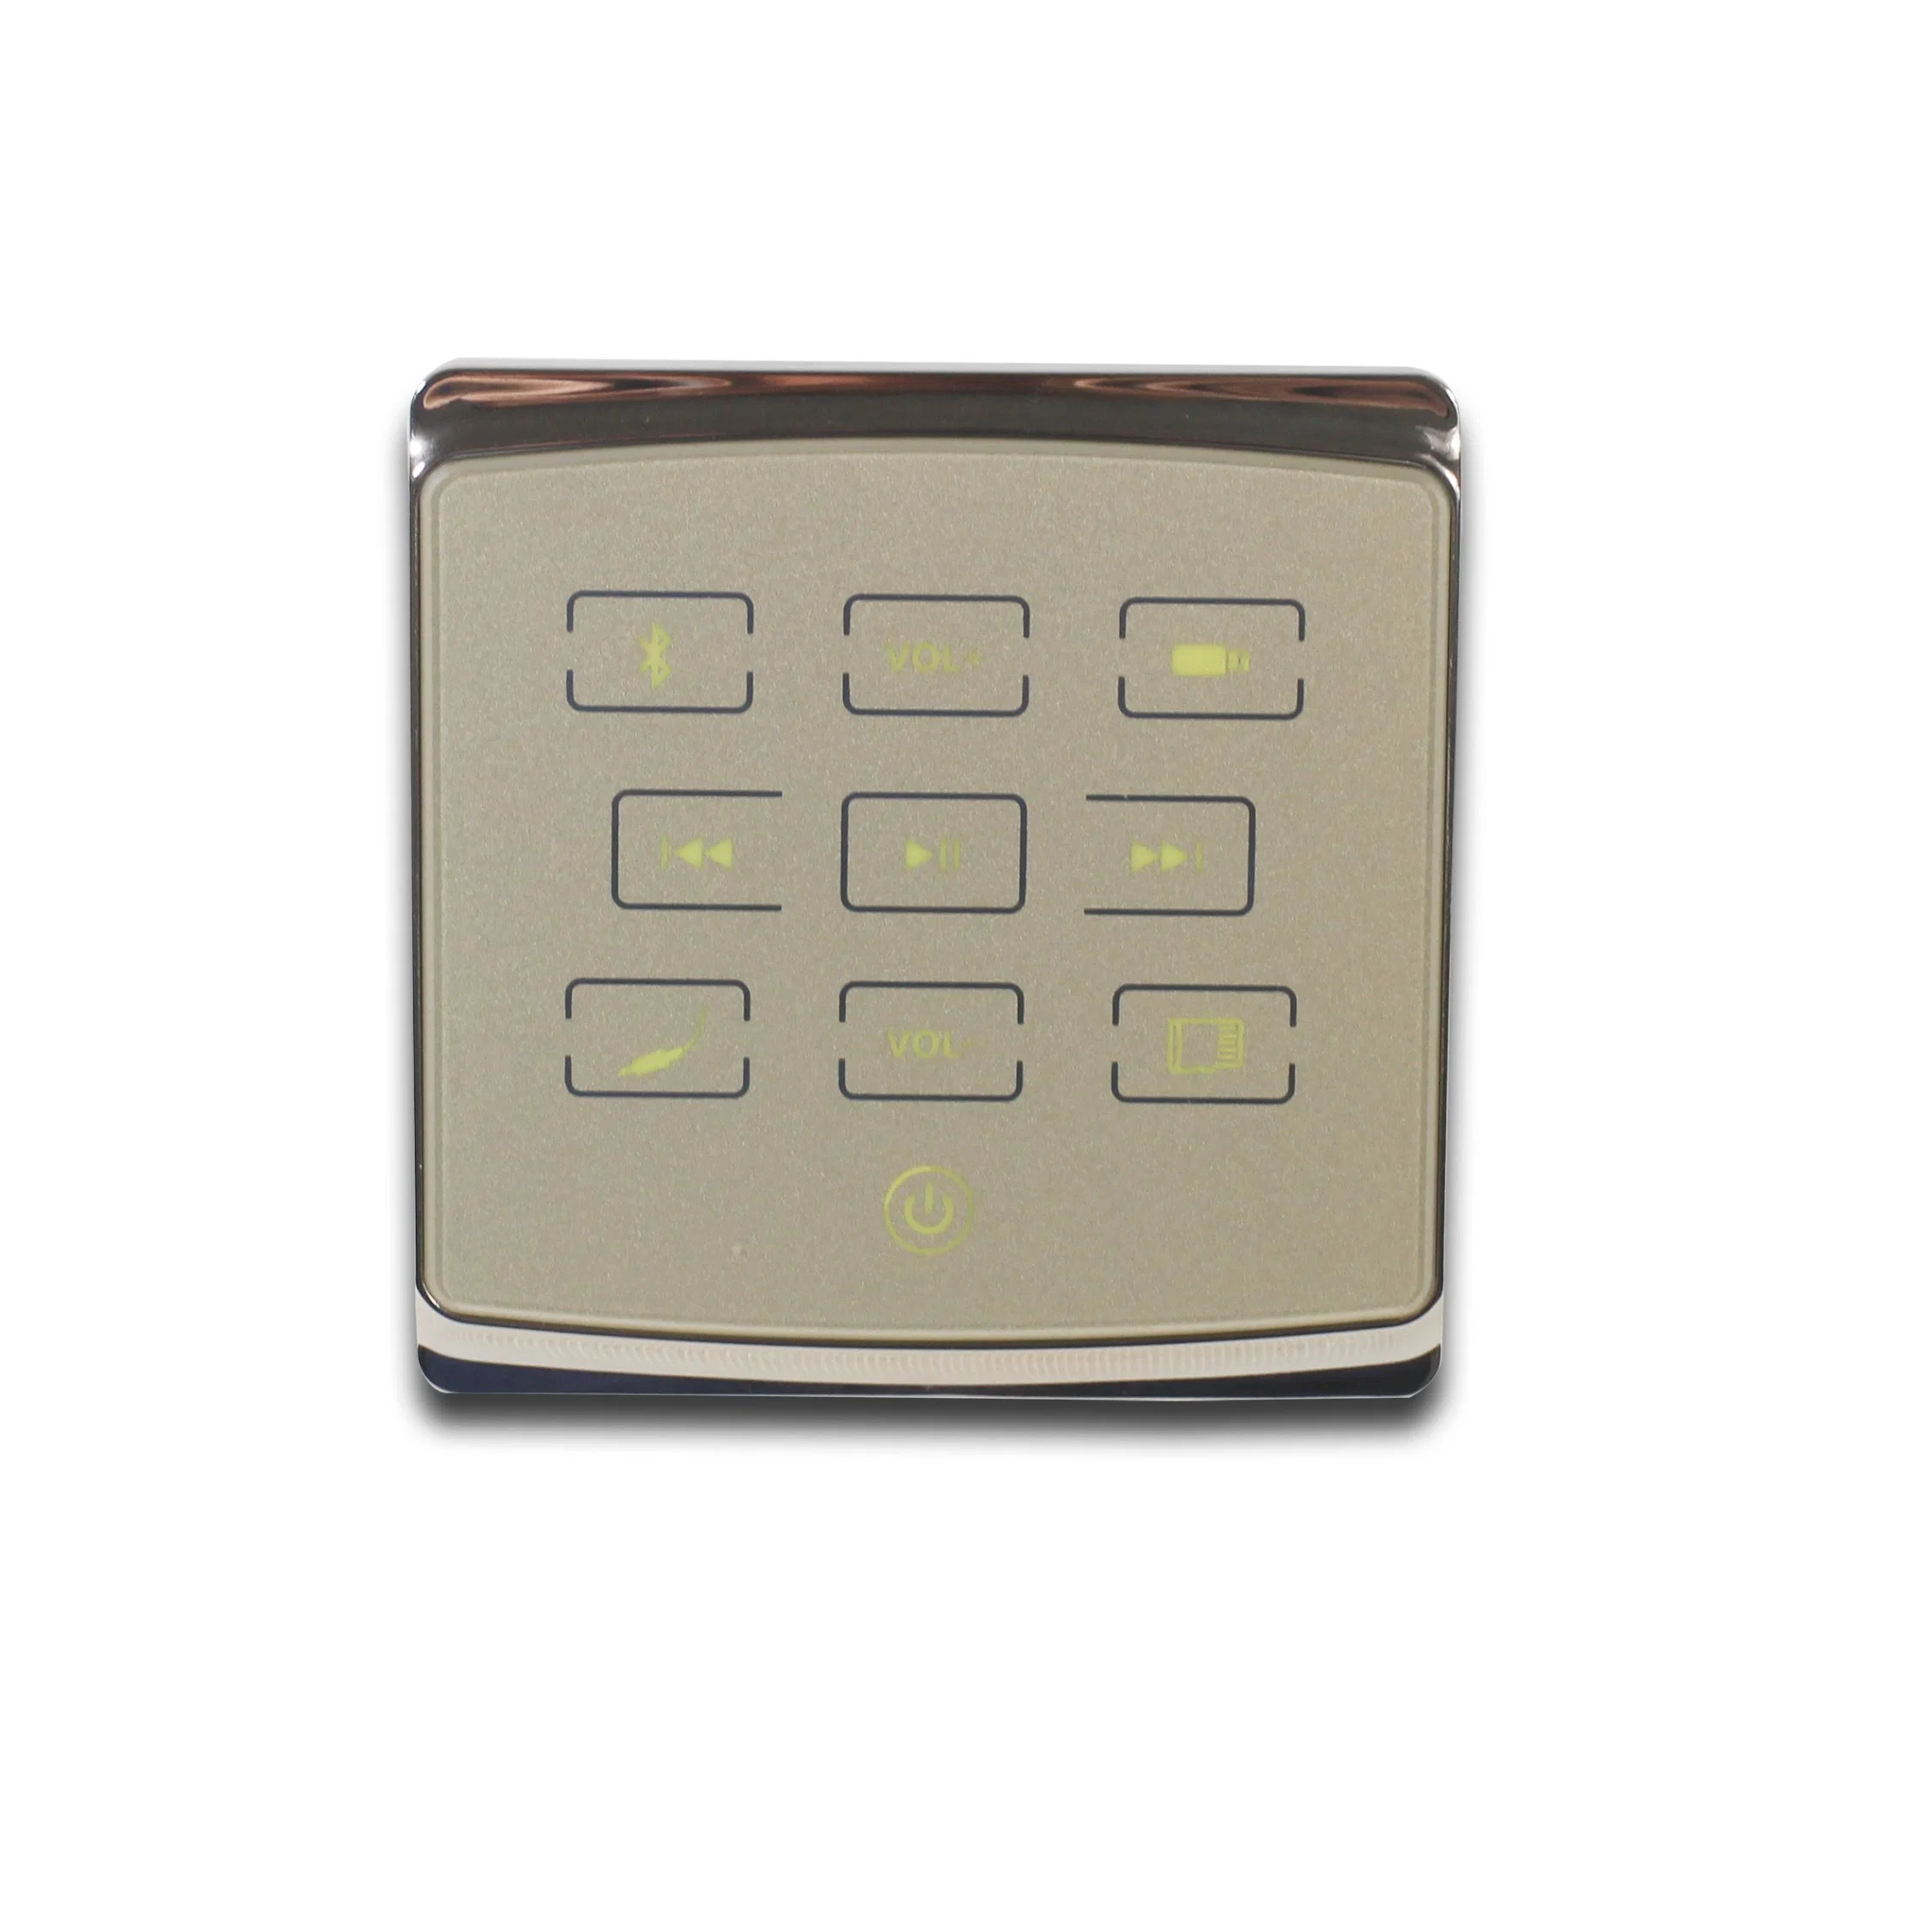 نظام صوتي منزلي متعدد مزود بتقنية Bluetooth® صغير ثنائي القناة من 2 إلى 4 قنوات مزود بمنفذ USB/TF صغير الحجم، مع مضخم صوت عالي الكفاءة من الفئة D